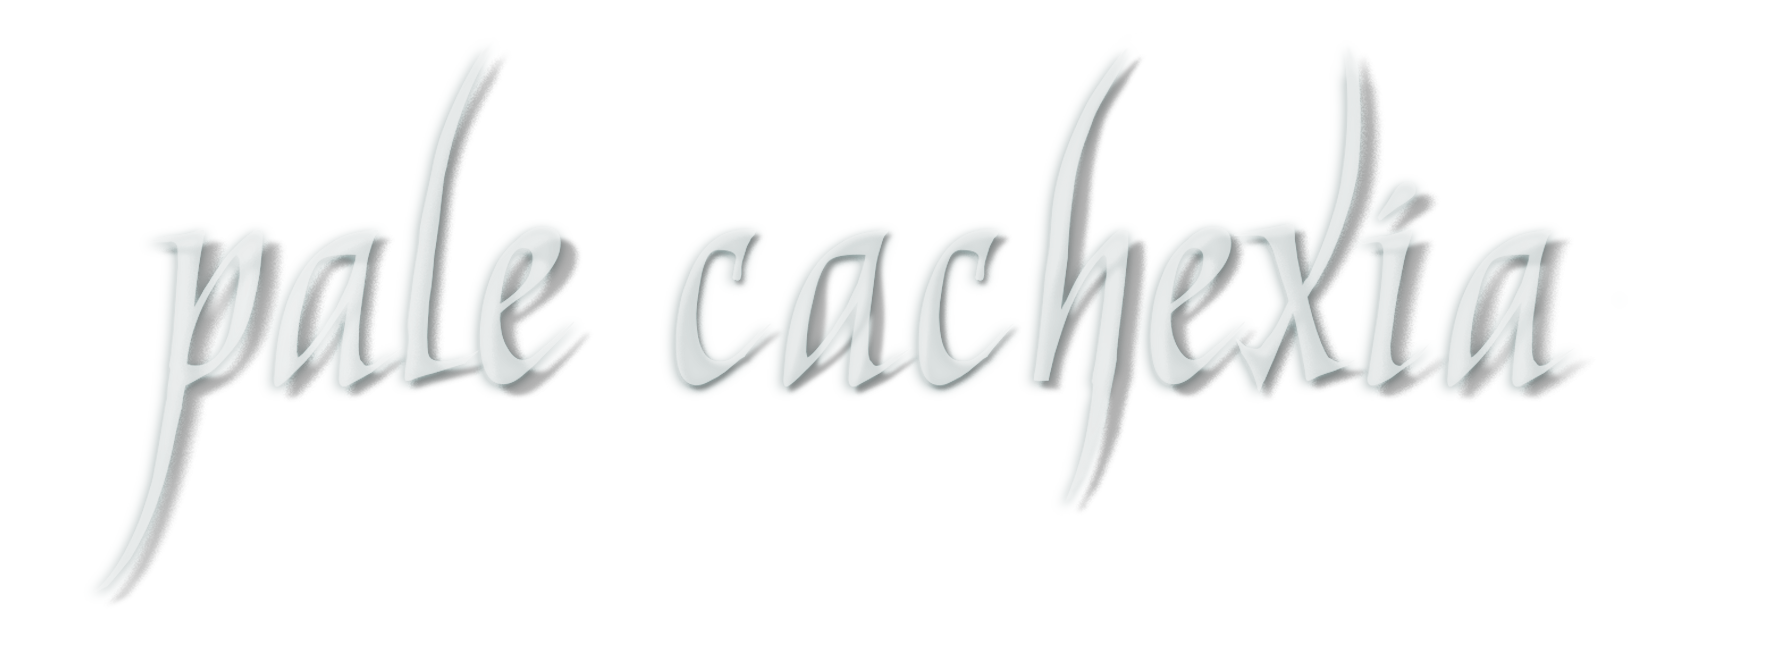 Pale Cachexia logo white text